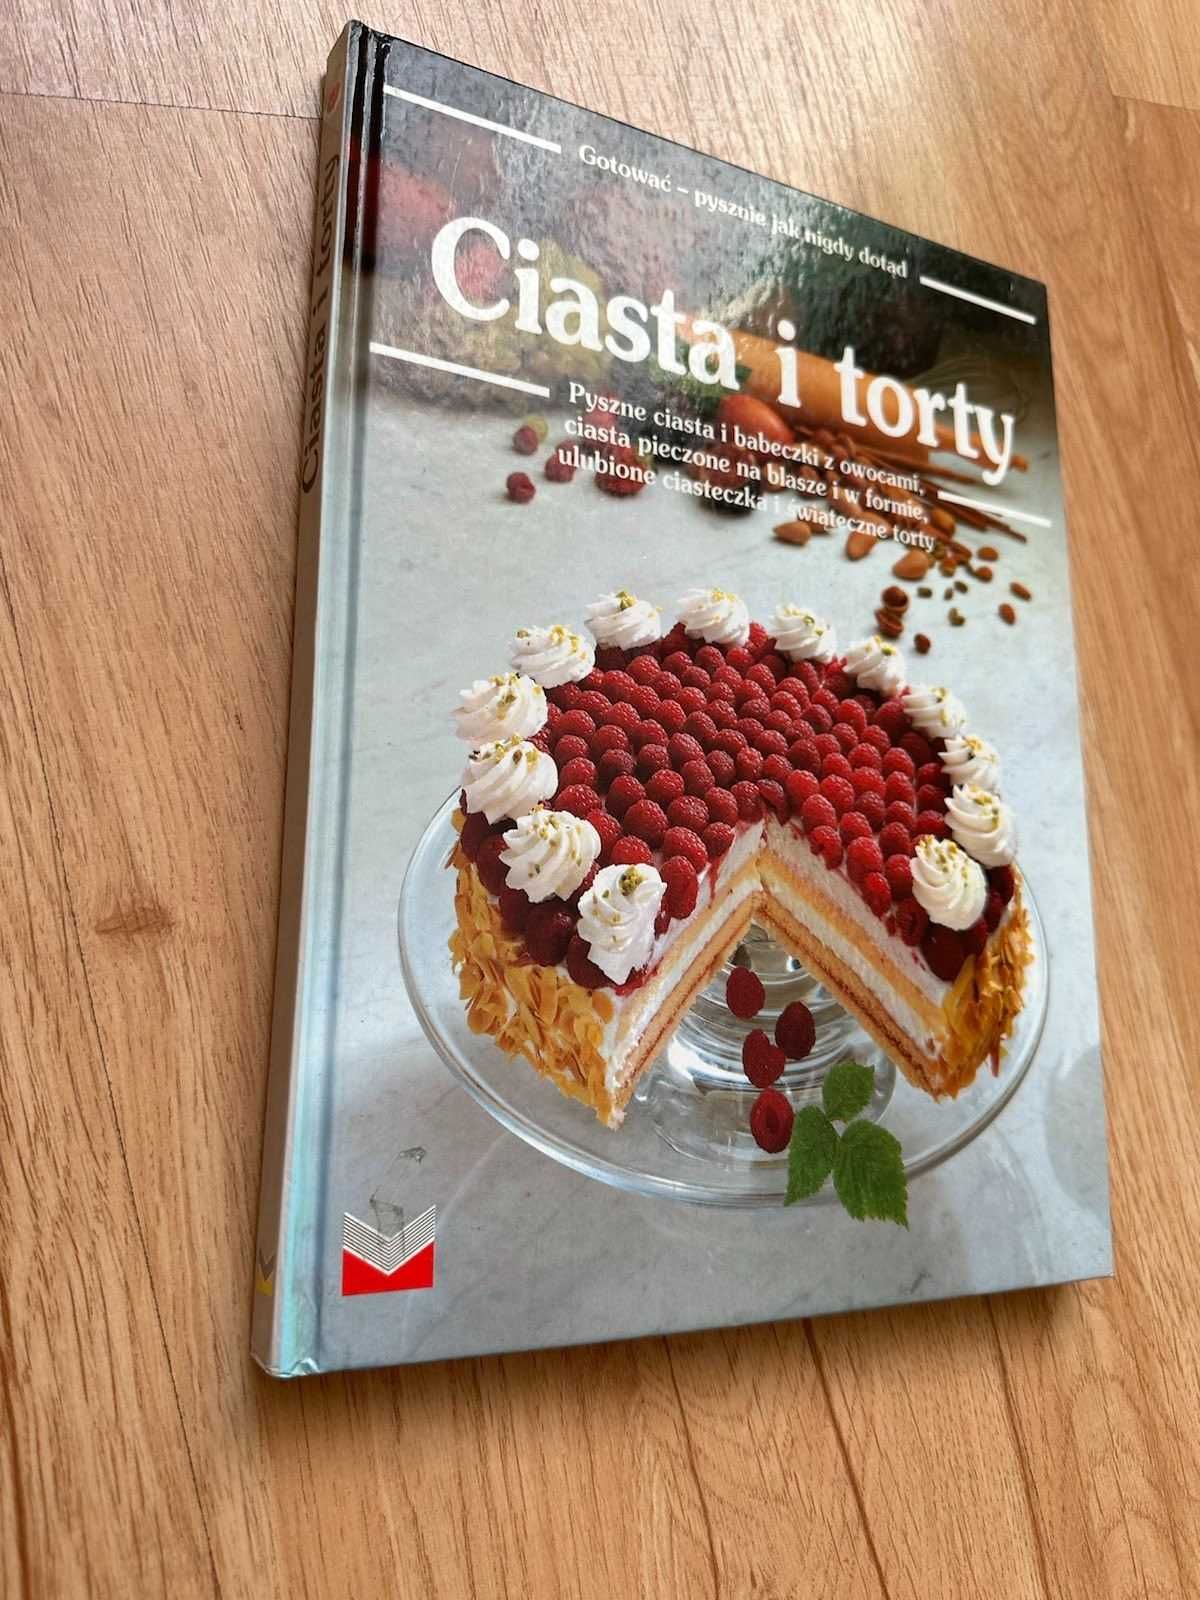 Książka Ciasta i torty, przepisy